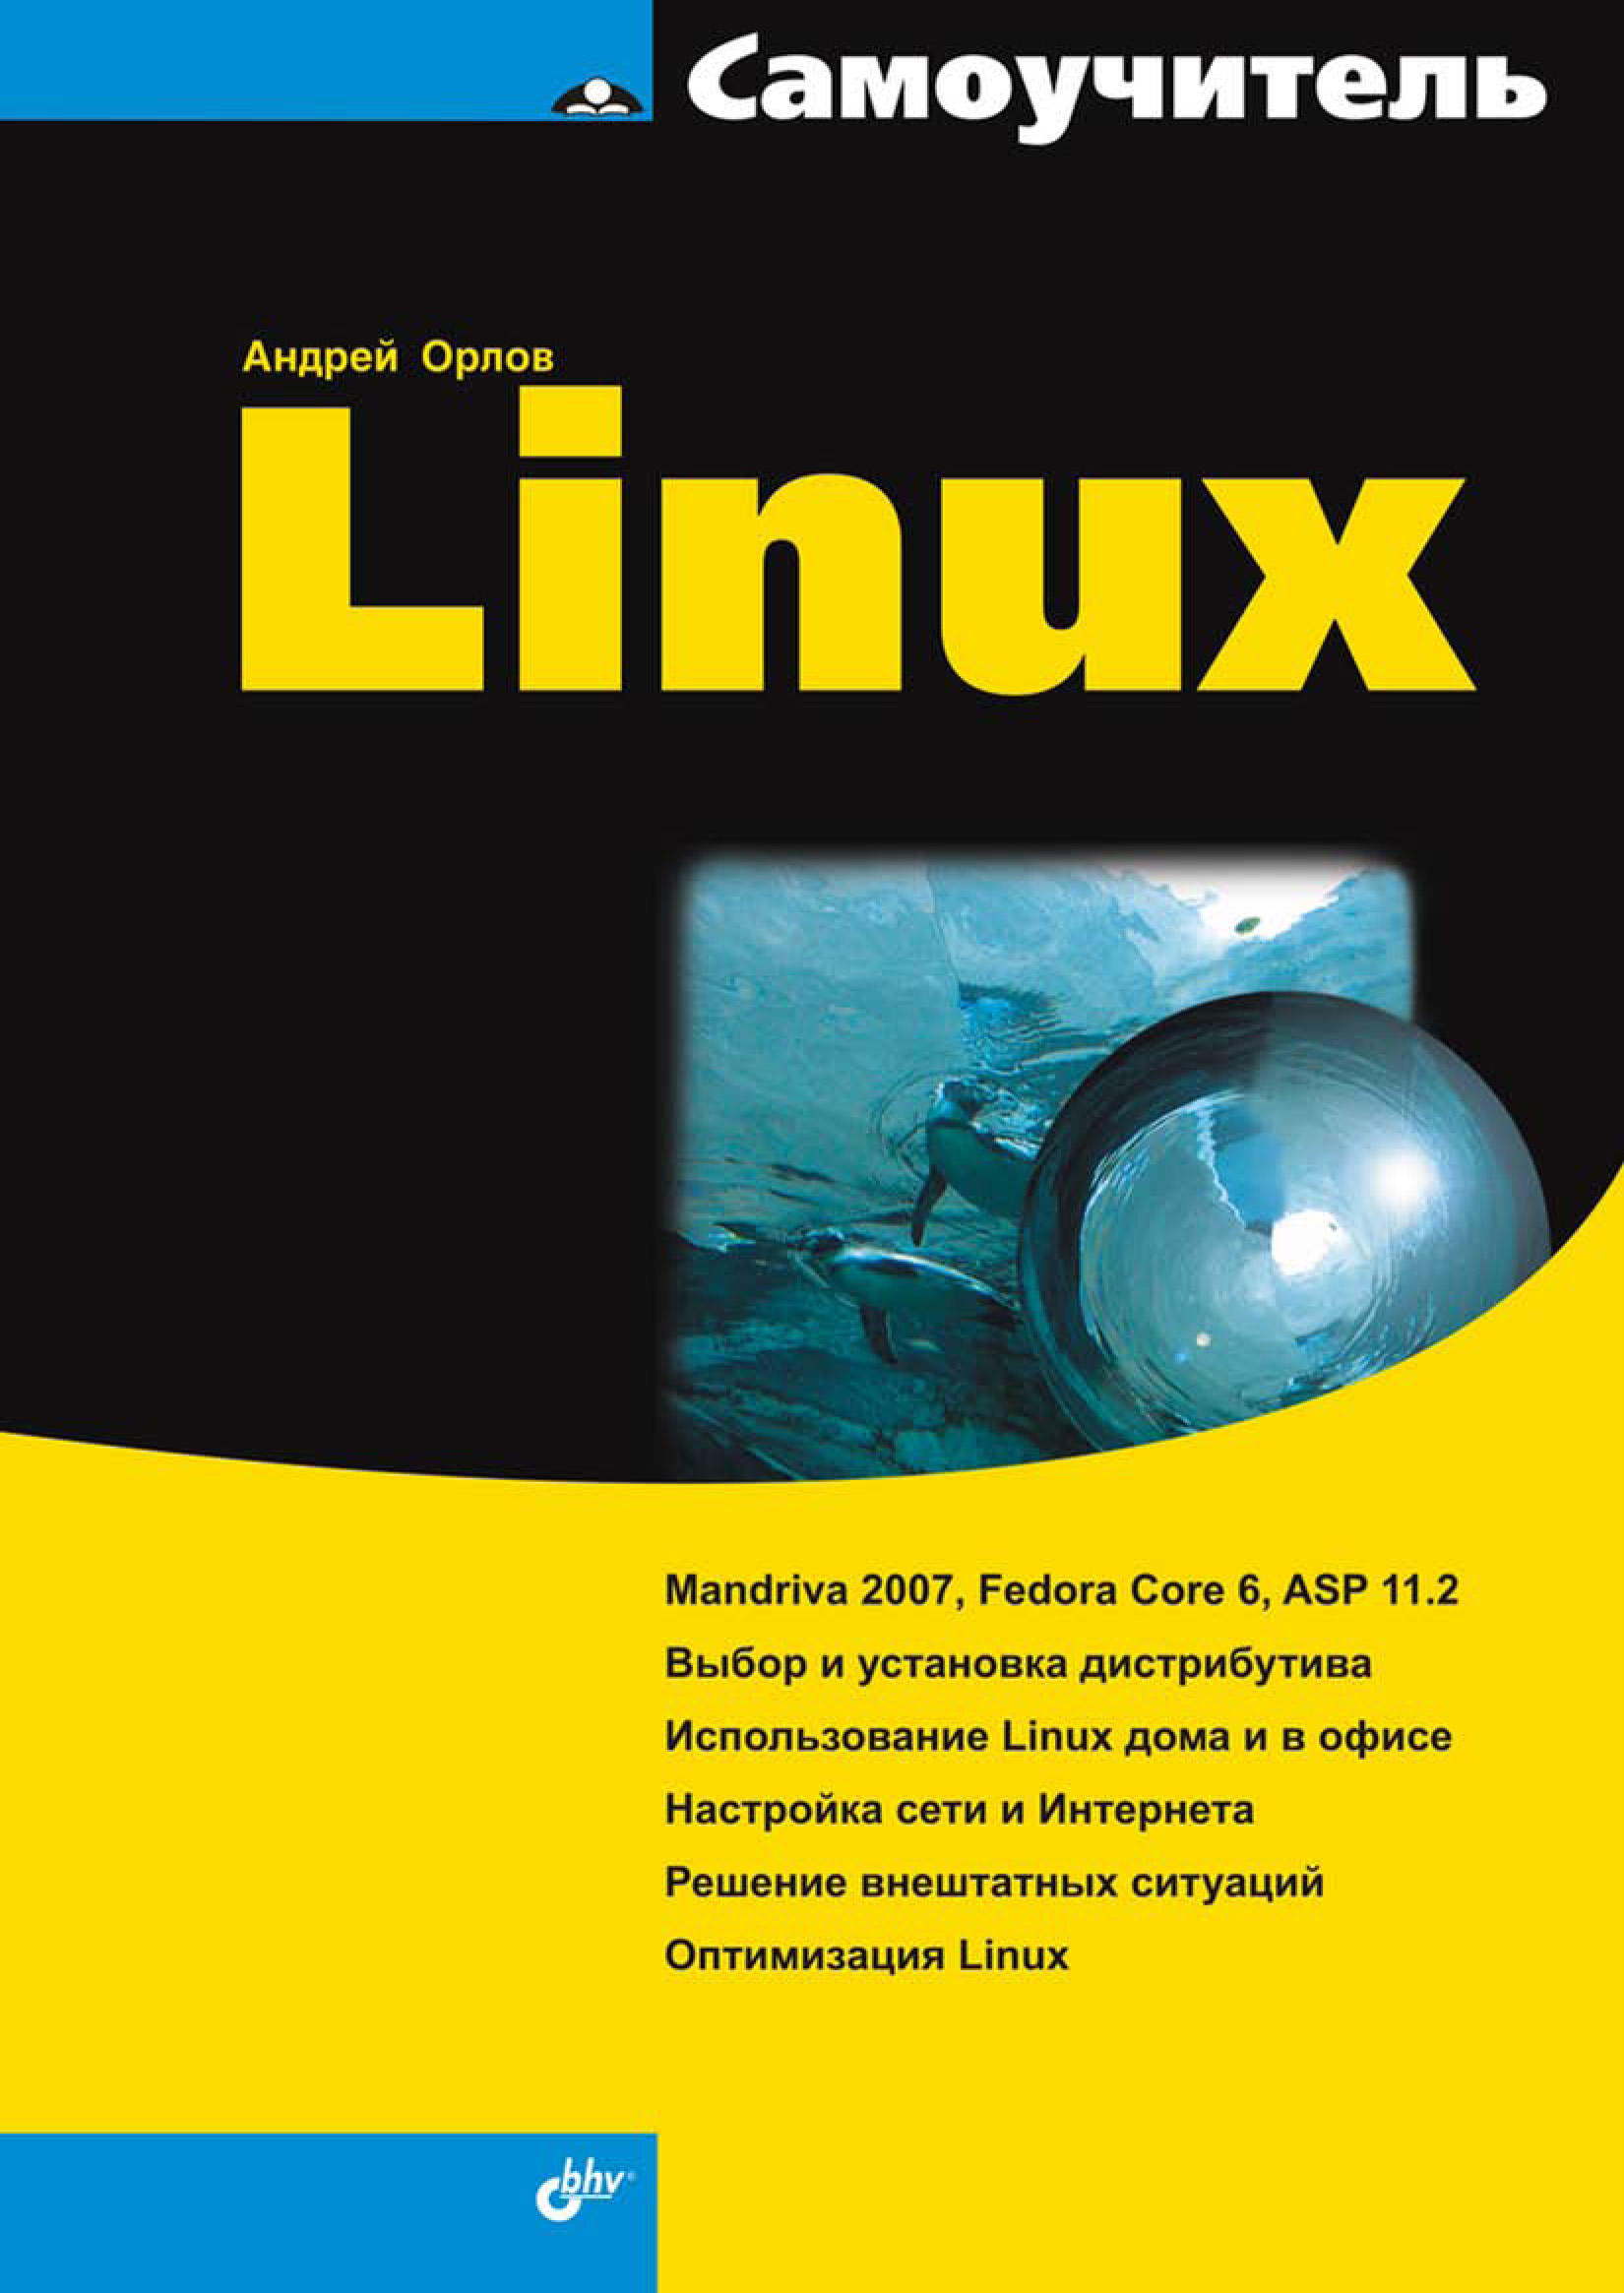 Книга Самоучитель (BHV) Самоучитель Linux созданная Андрей Орлов может относится к жанру интернет, ОС и сети. Стоимость электронной книги Самоучитель Linux с идентификатором 6661611 составляет 127.00 руб.